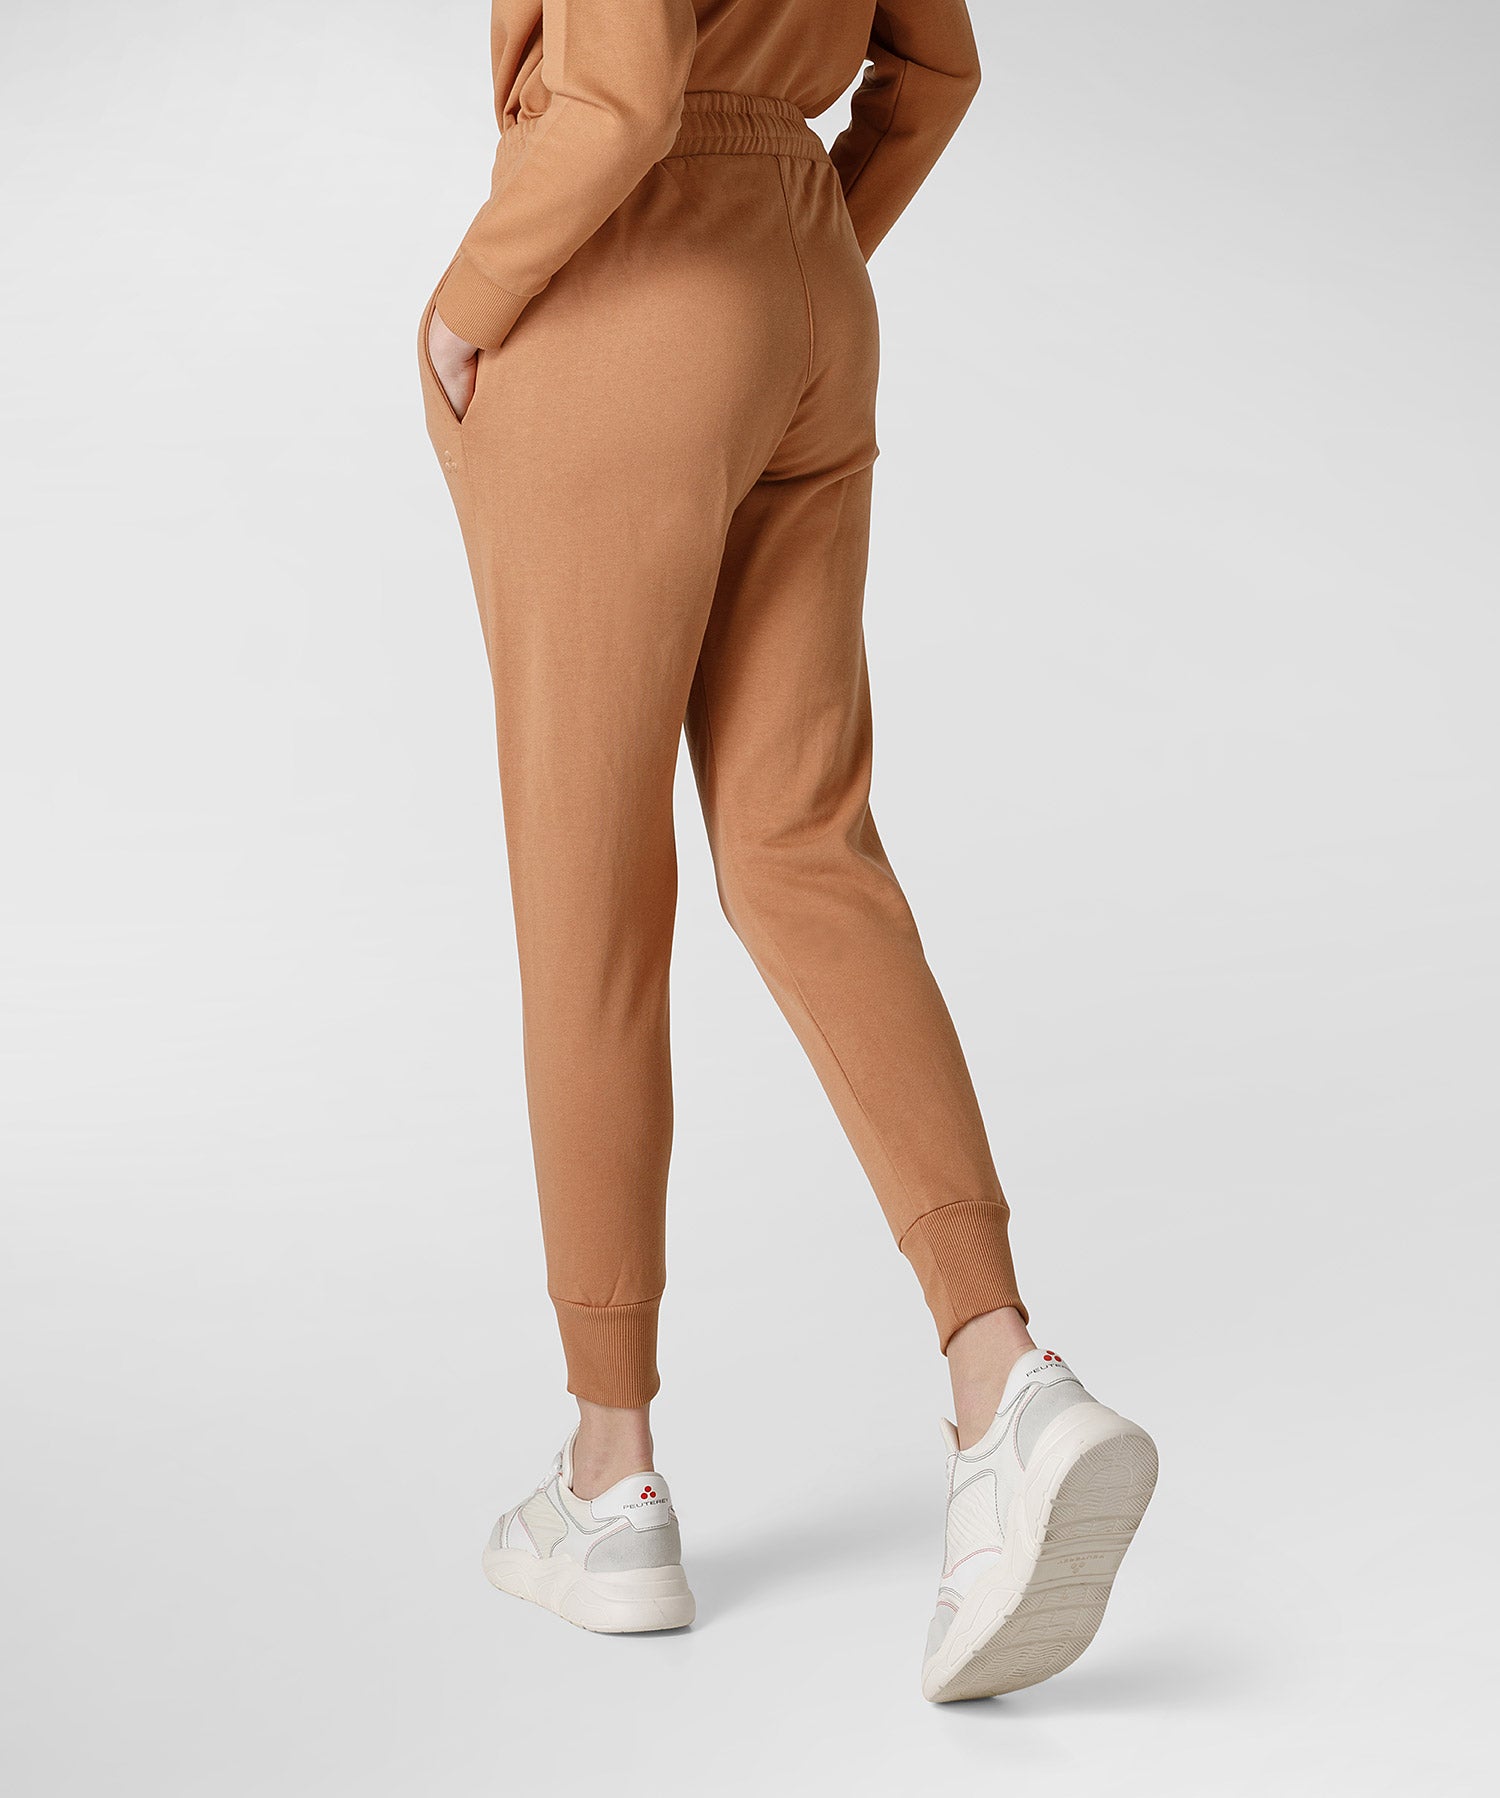 Pantalone Peuterey in Tuta / Beige - Ideal Moda